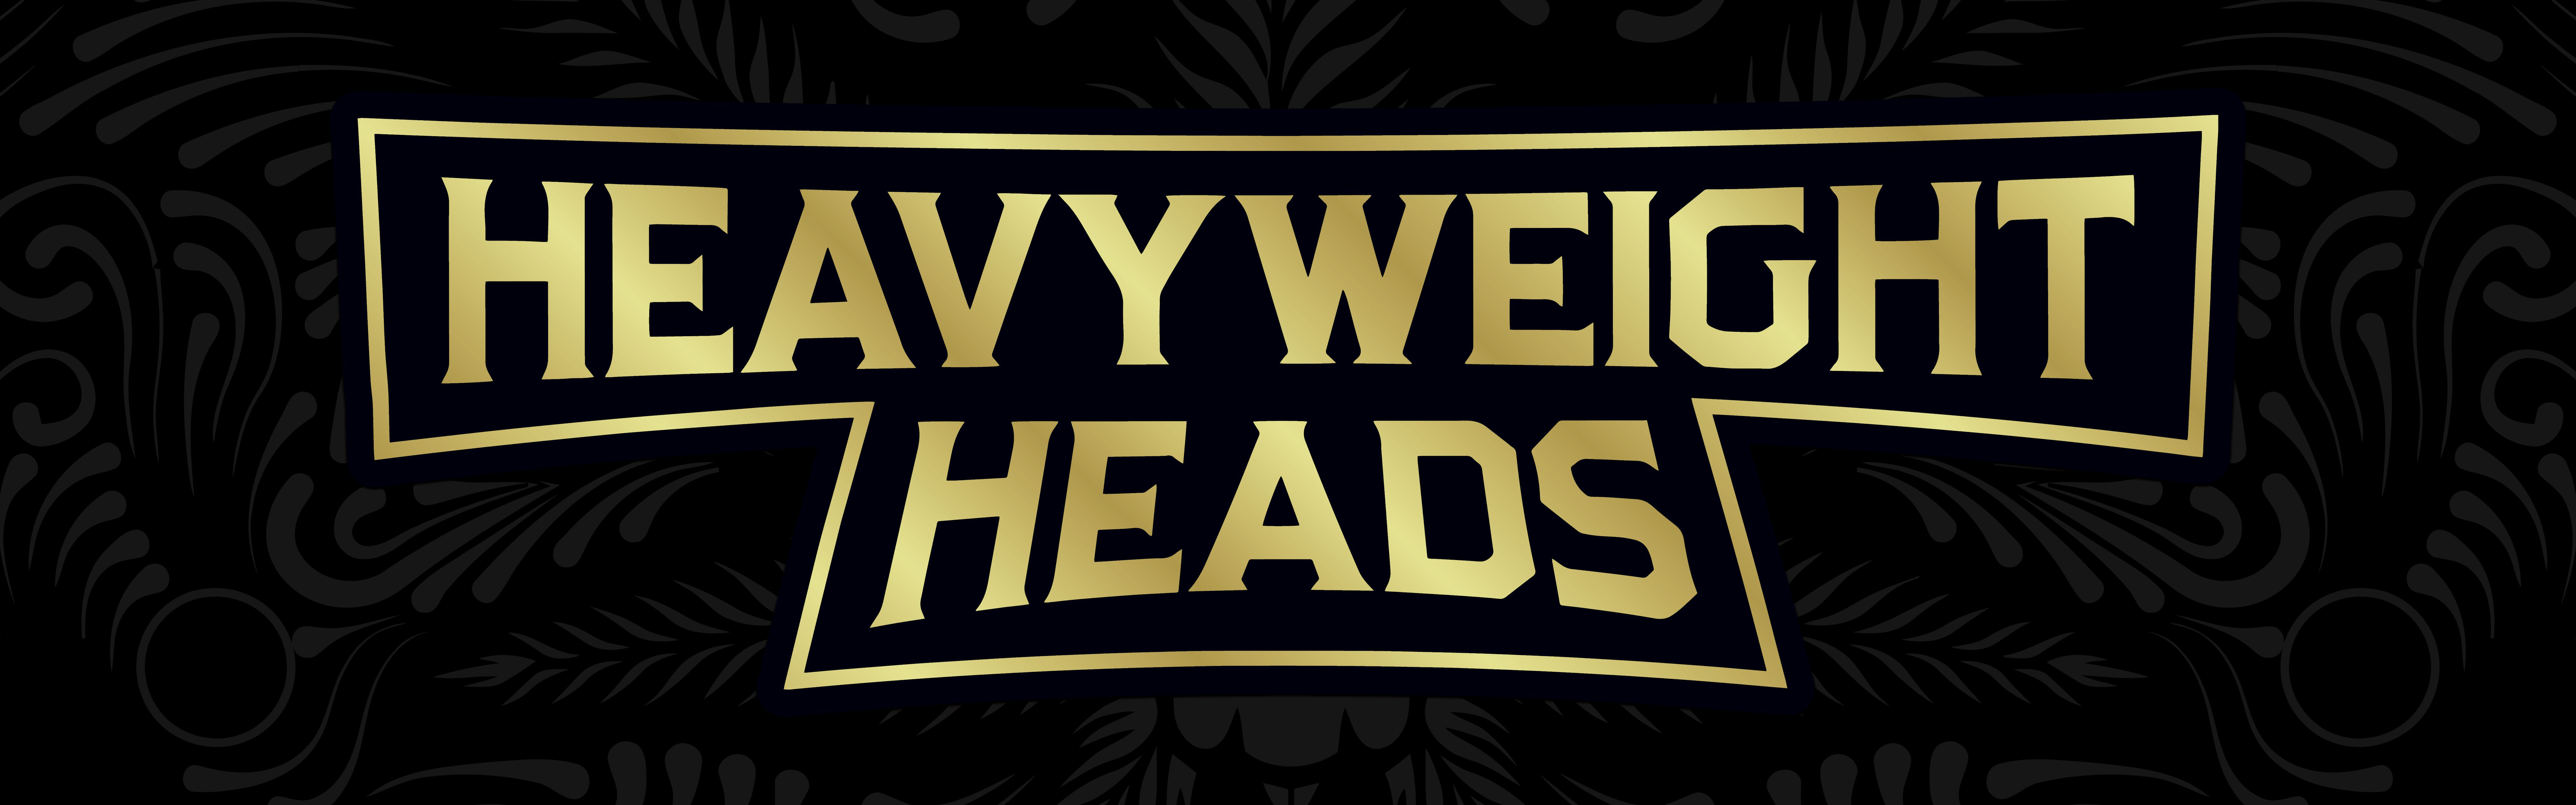 Heavyweight Heads banner